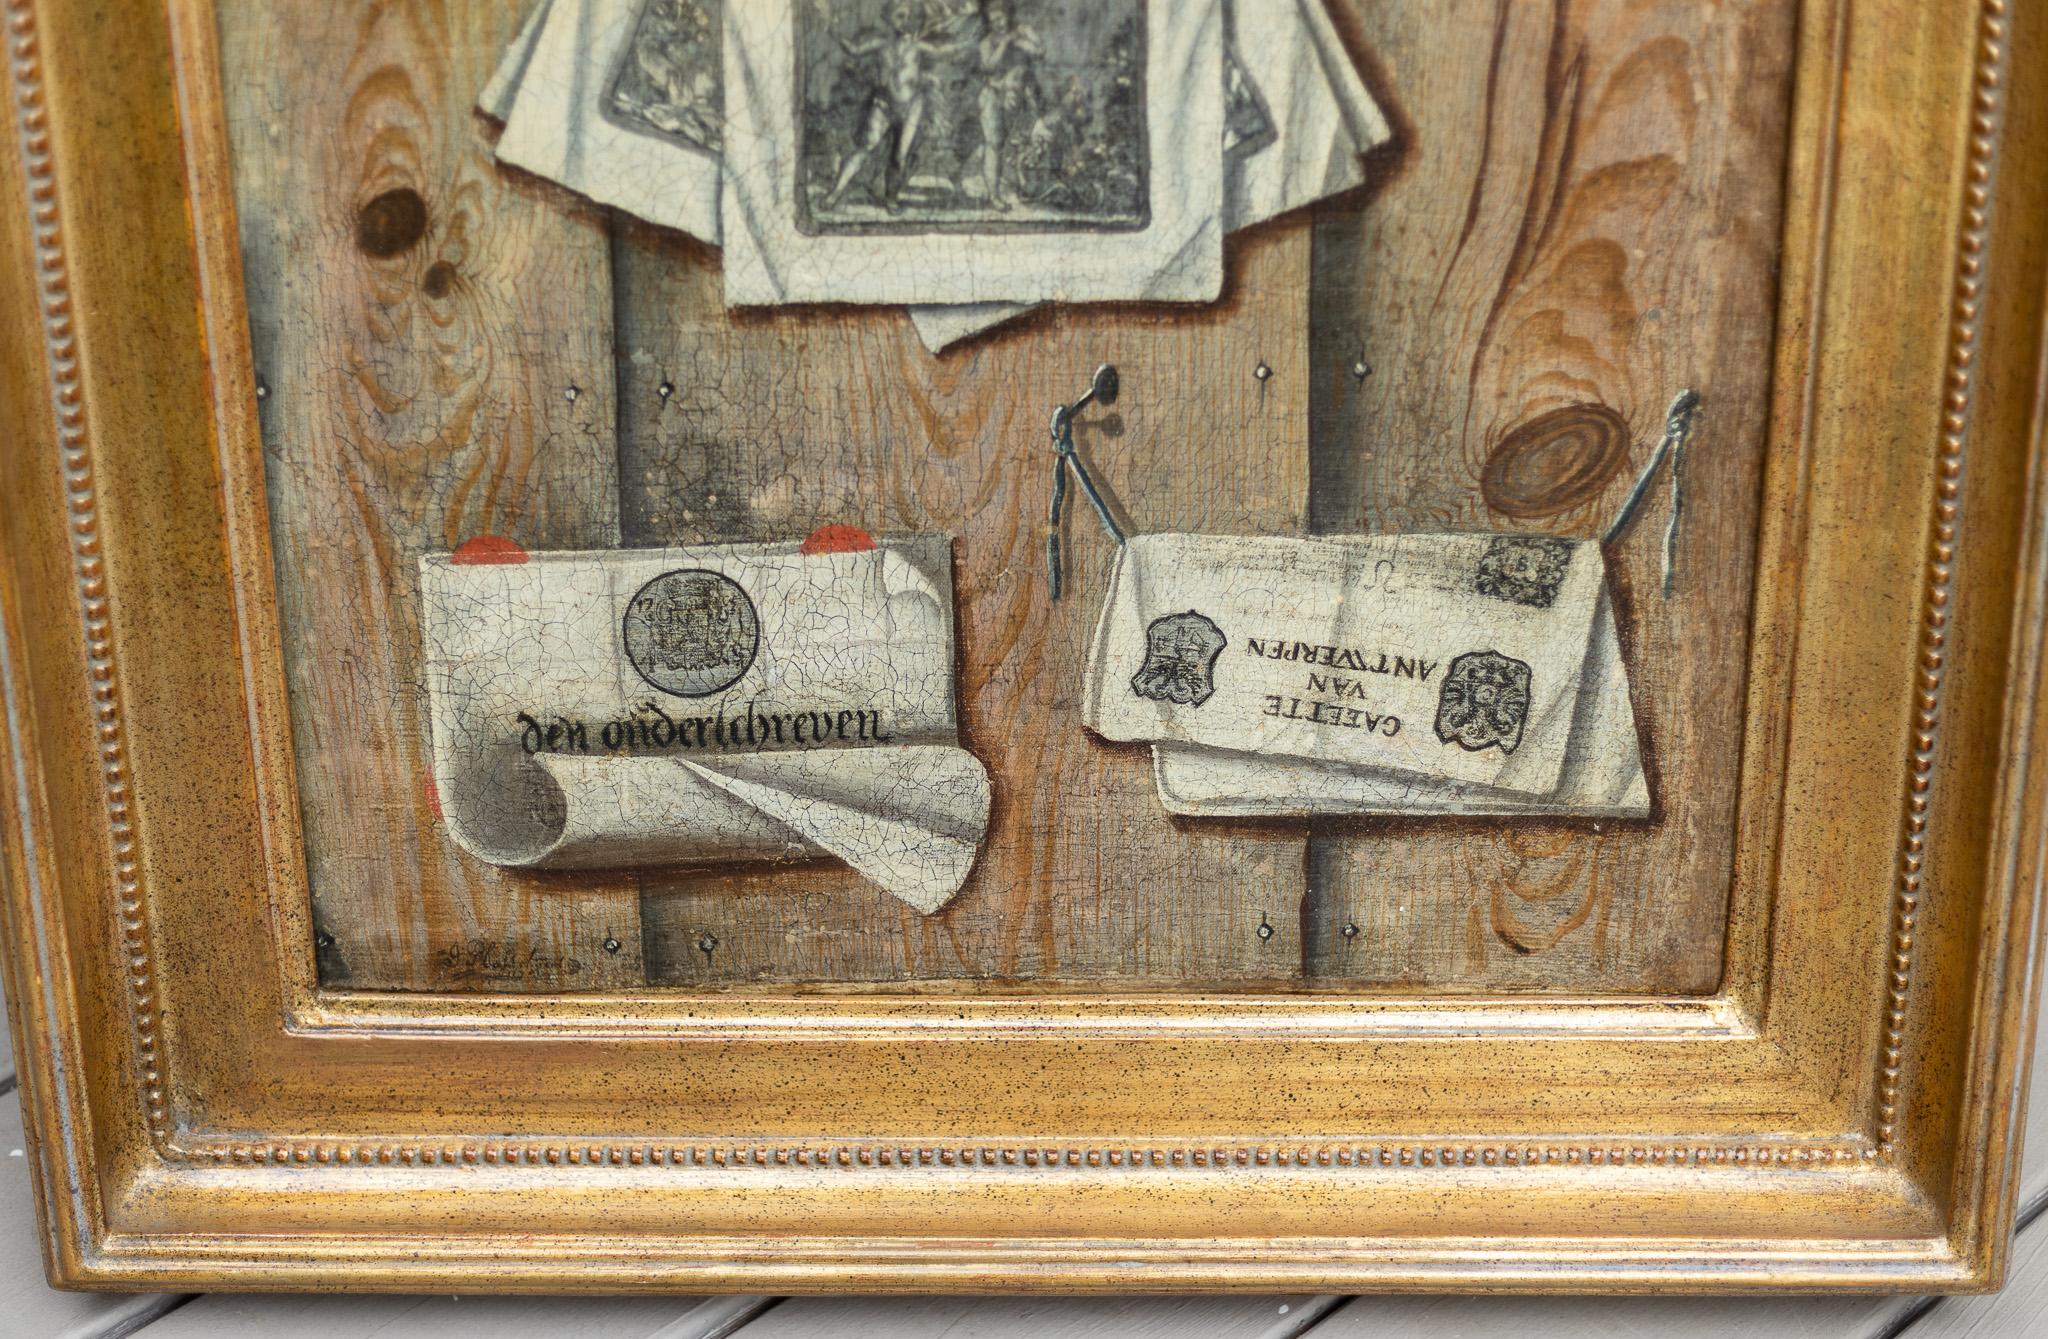 Dieses historische Gemälde von Plasschaert in seinem klassischen Trompe L'Oeil-Stil zeigt Dokumente und Drucksachen auf einer Holzwand. Dieses Gemälde wurde 1741 geschaffen und ist somit 281 Jahre alt. Es ist in einem schmeichelhaften goldfarbenen